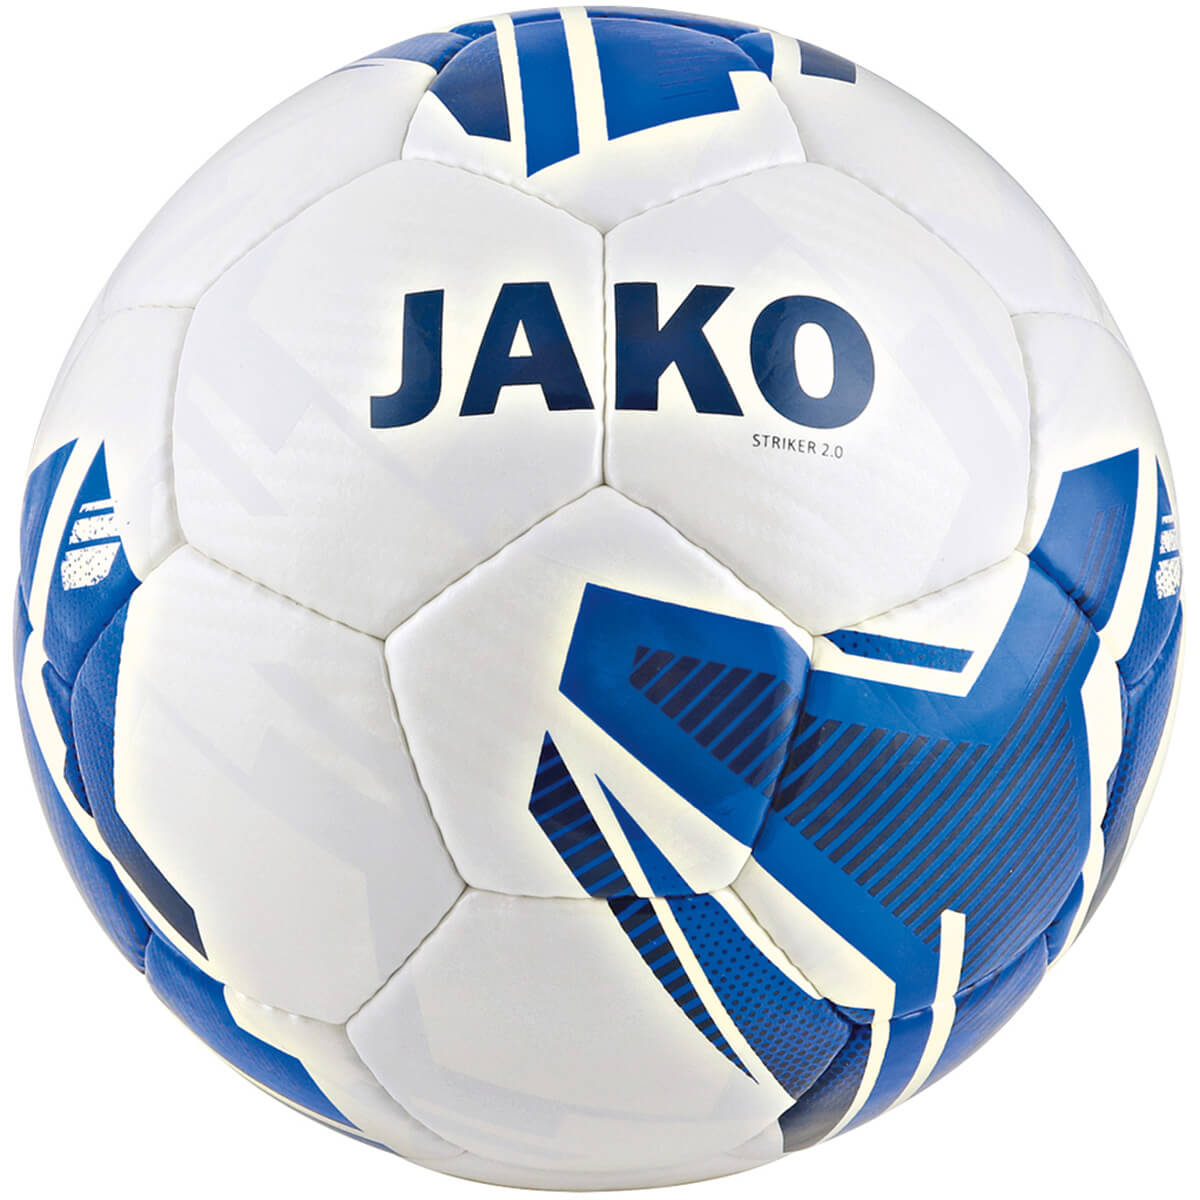 JAKO 2353-04 Ballon Entraînement Striker 2.0 Blanc/Bleu Royale